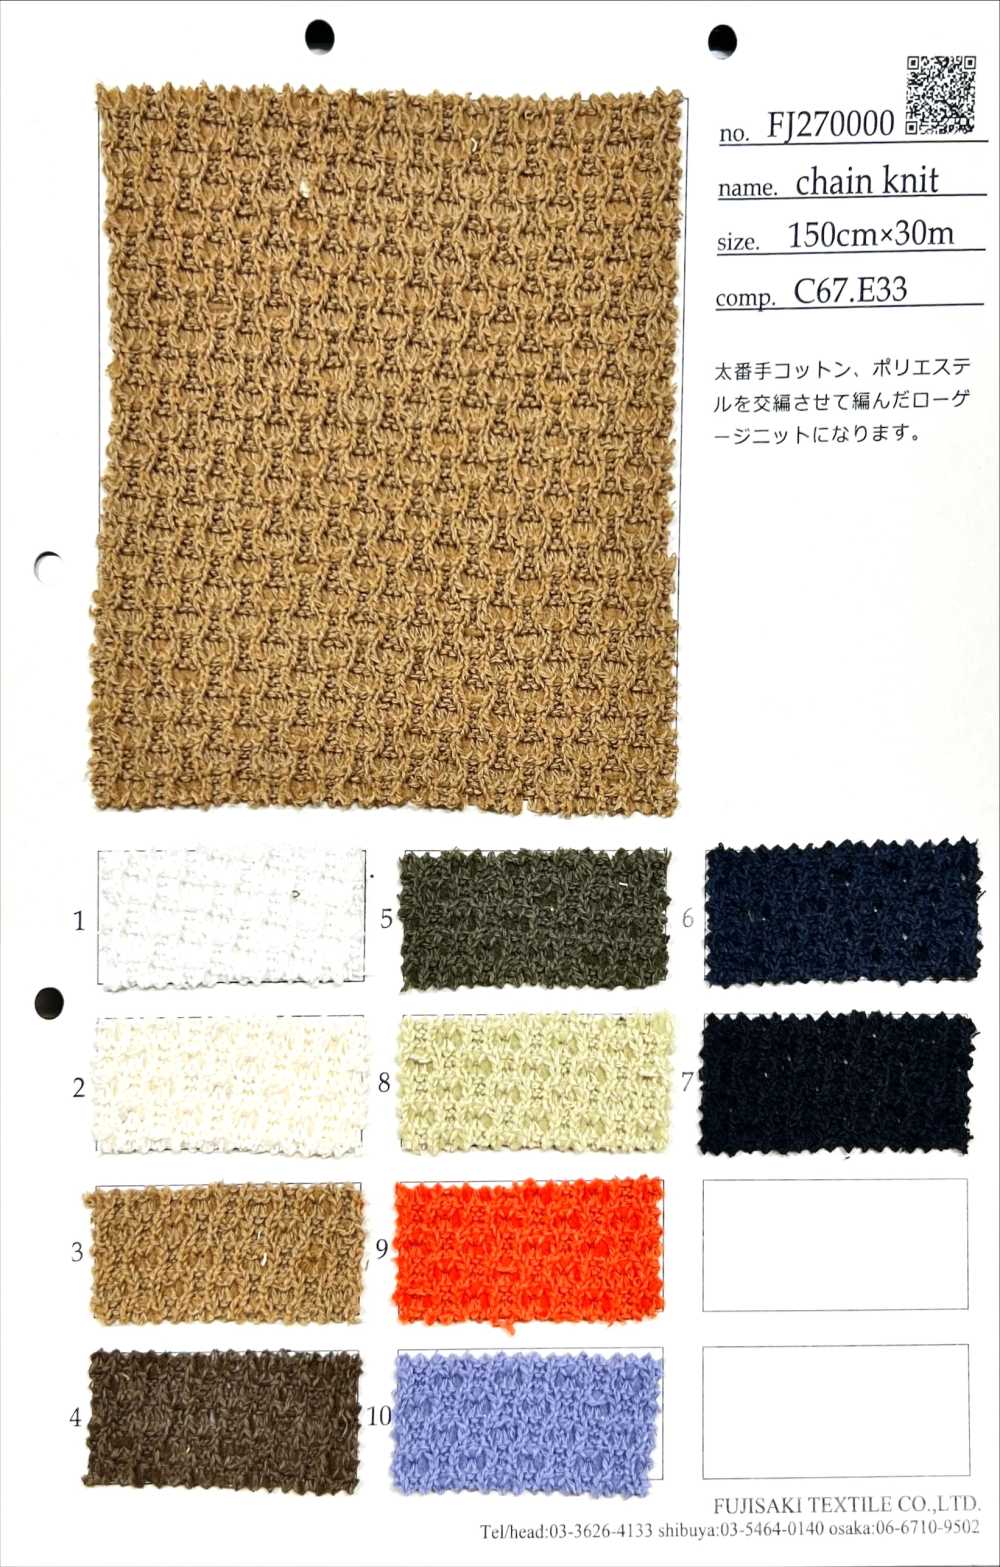 FJ270000 chain knit[生地] フジサキテキスタイル